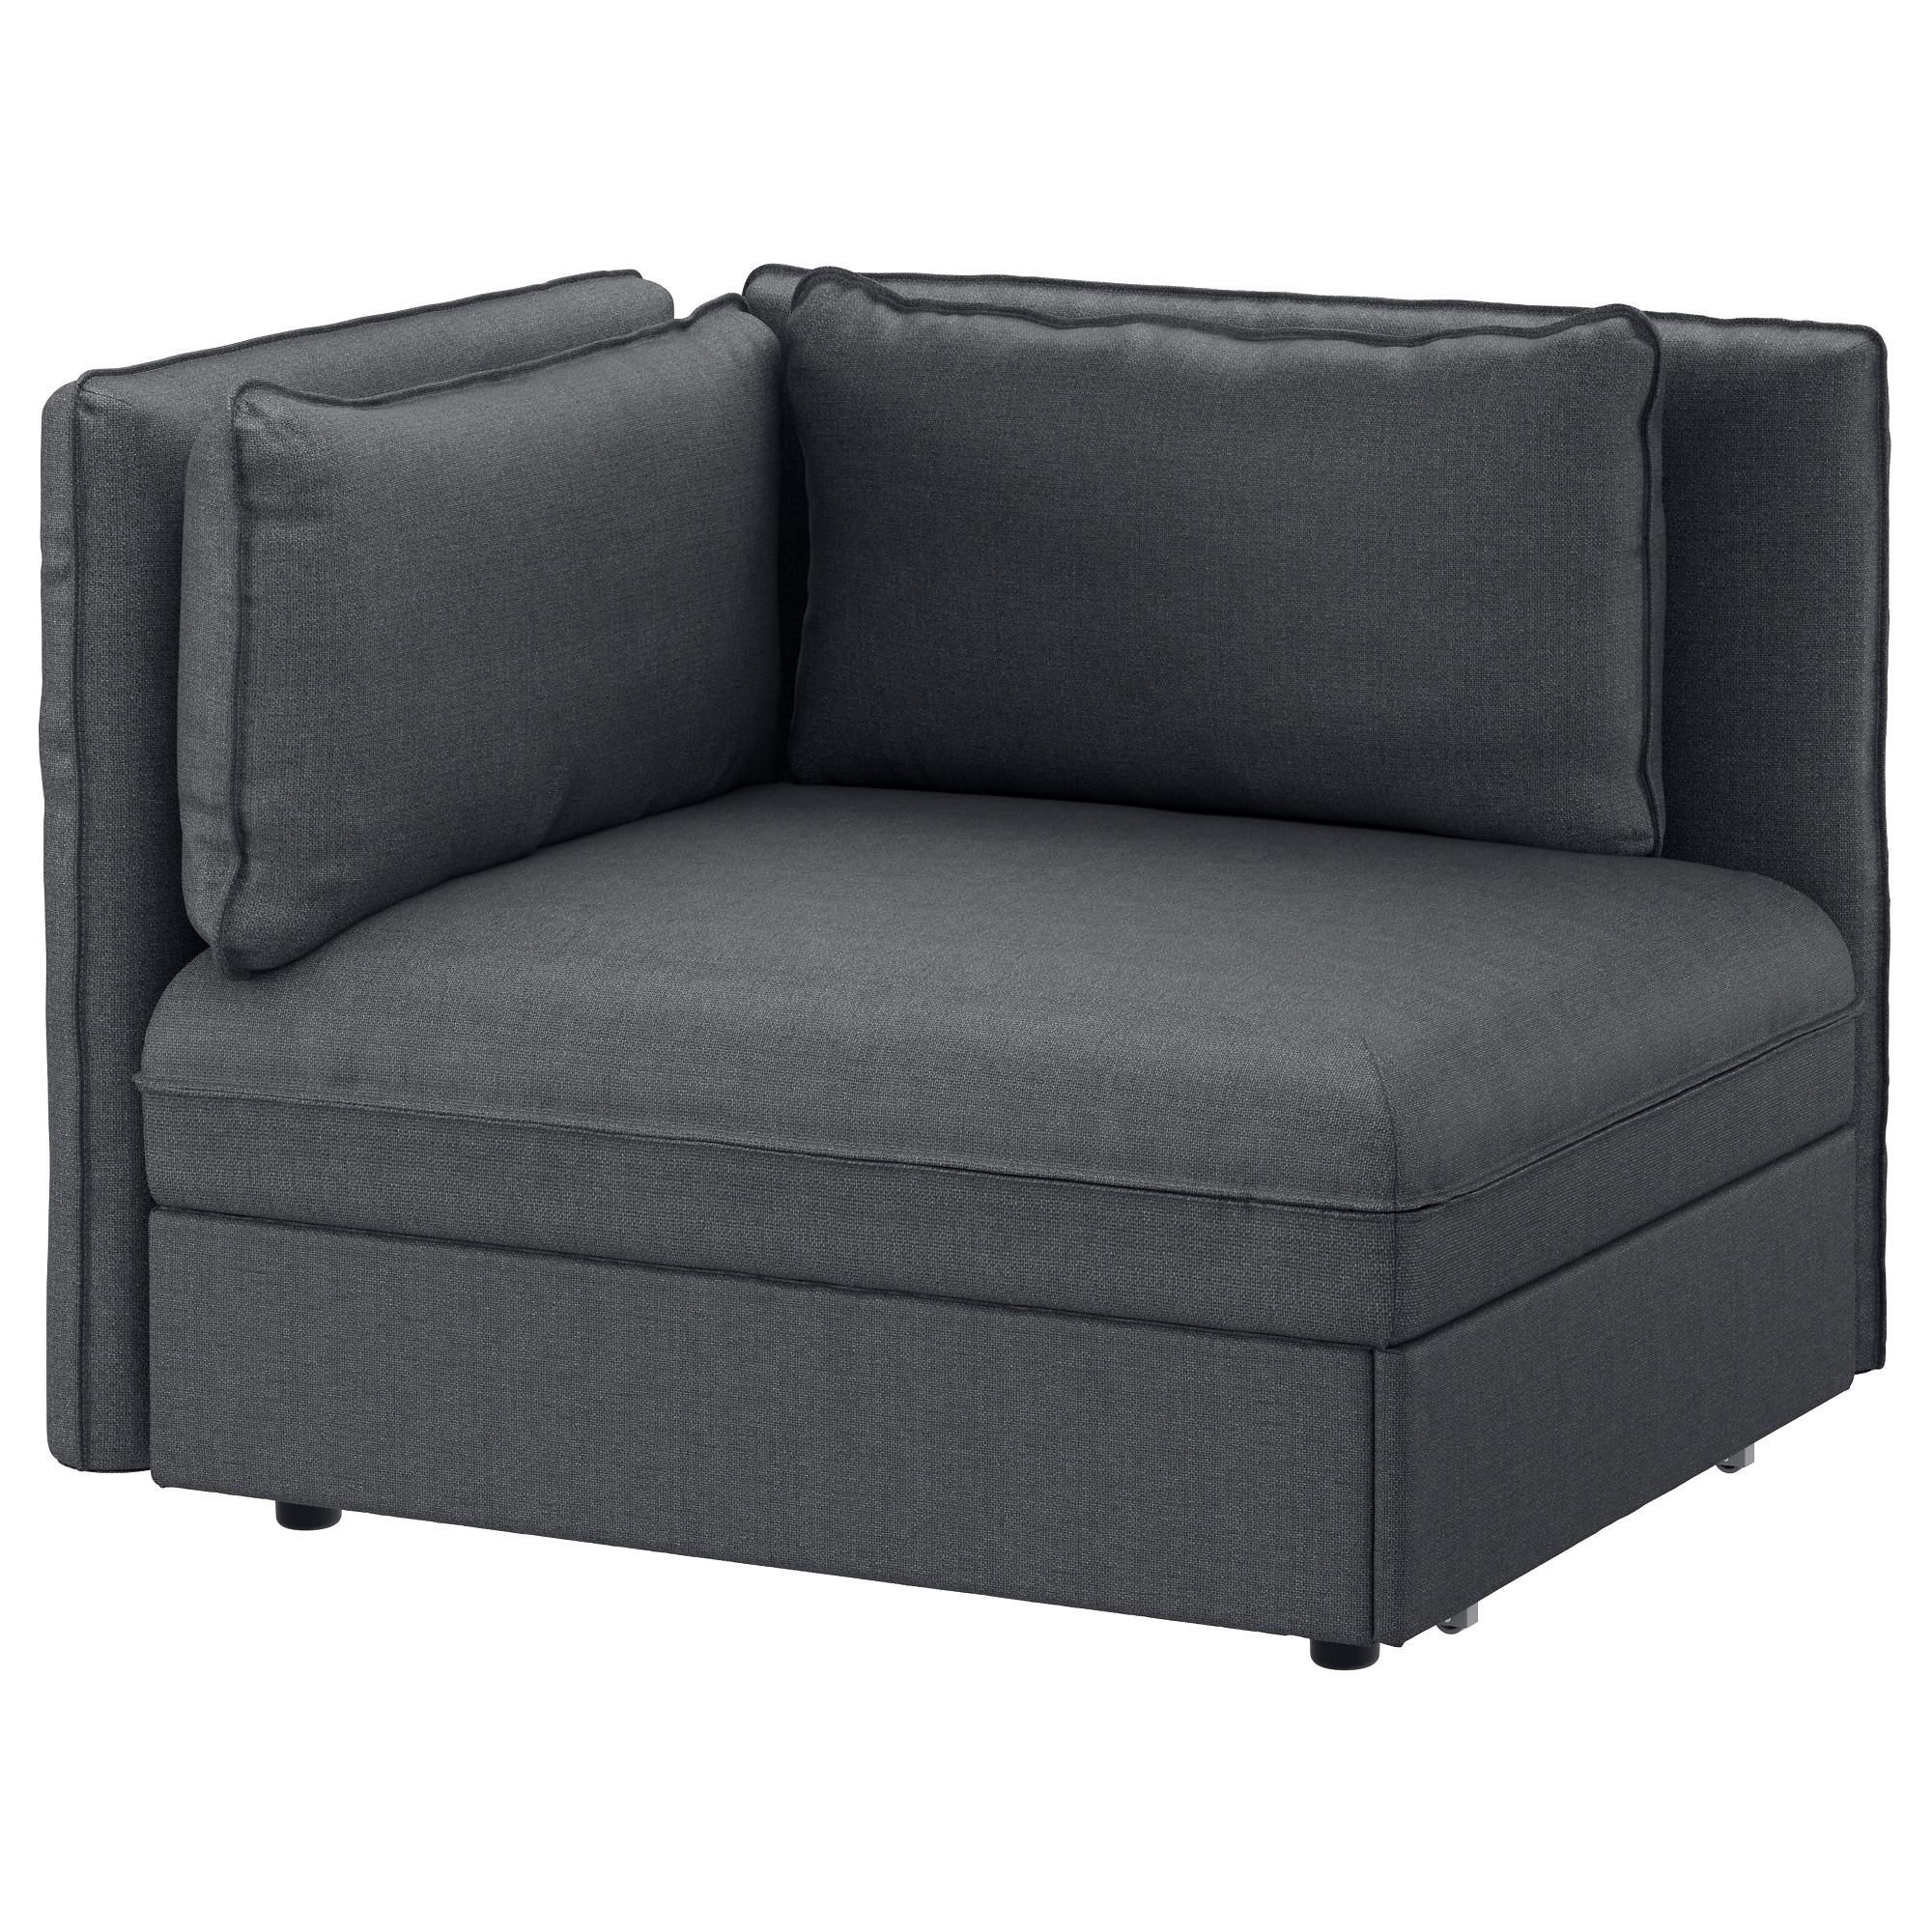 Sofa Beds & Futons – Ikea Regarding Mini Sofa Beds (View 5 of 20)